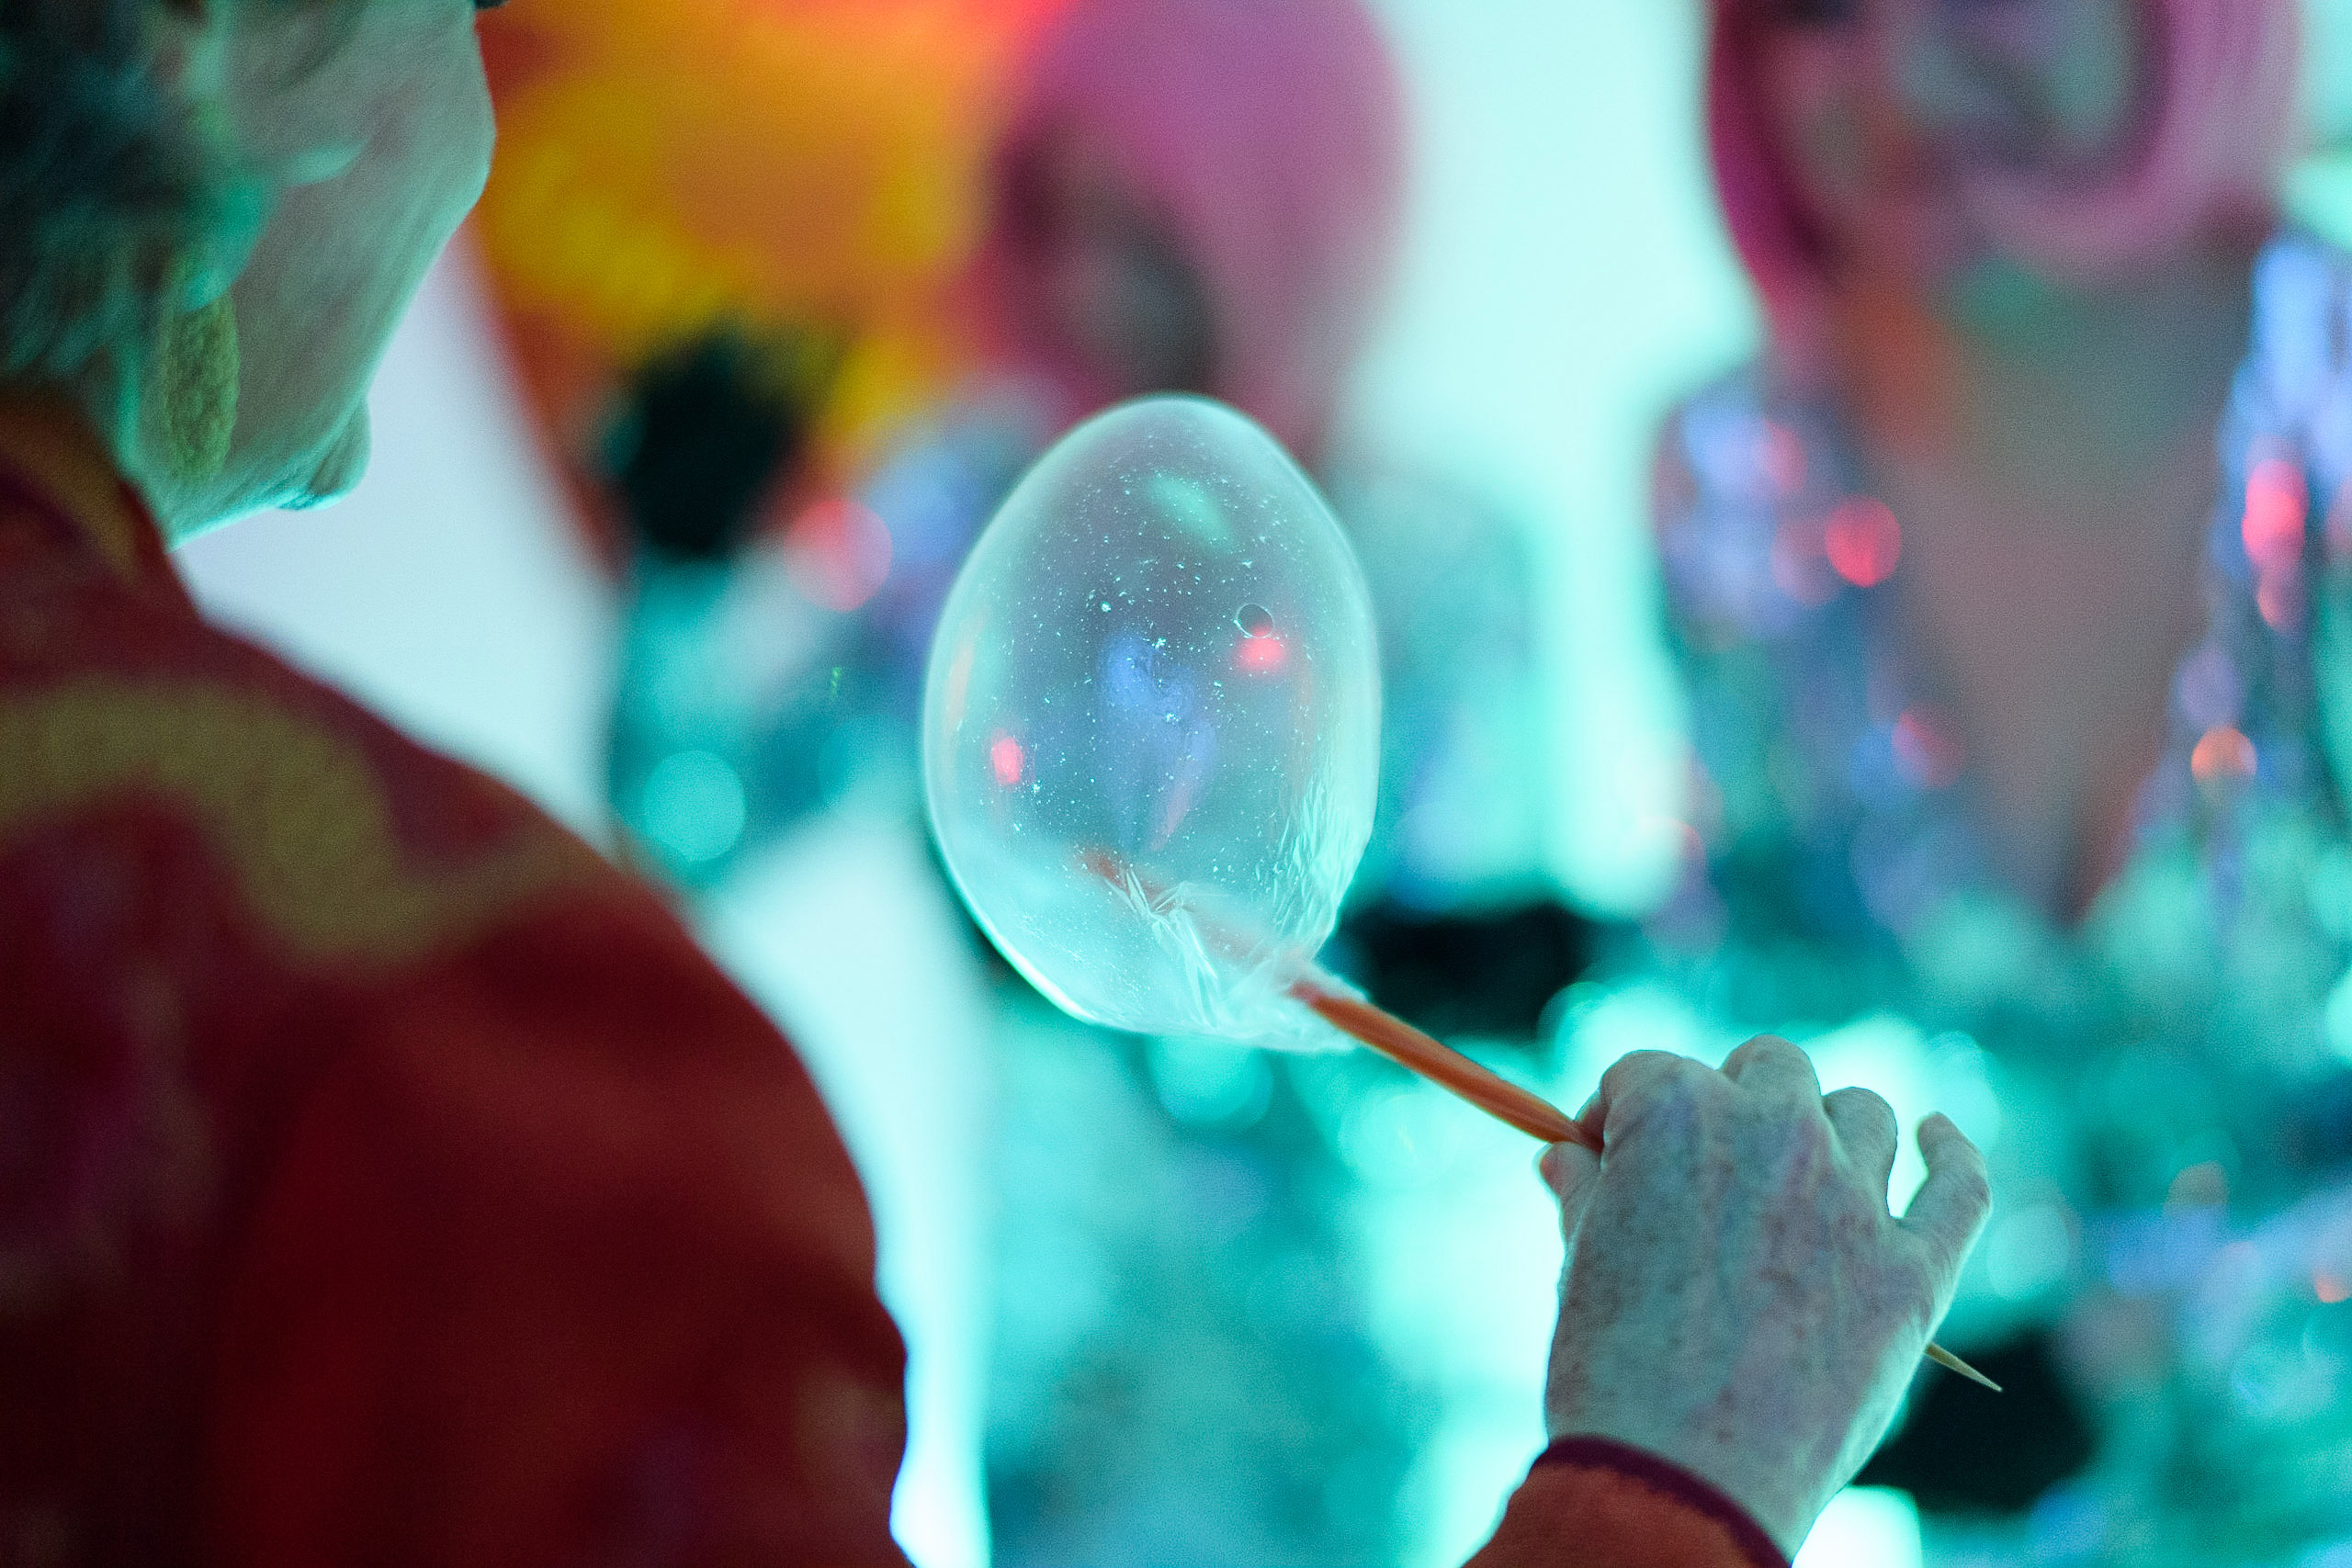 interactive dessert bar experience - edible bubble bar